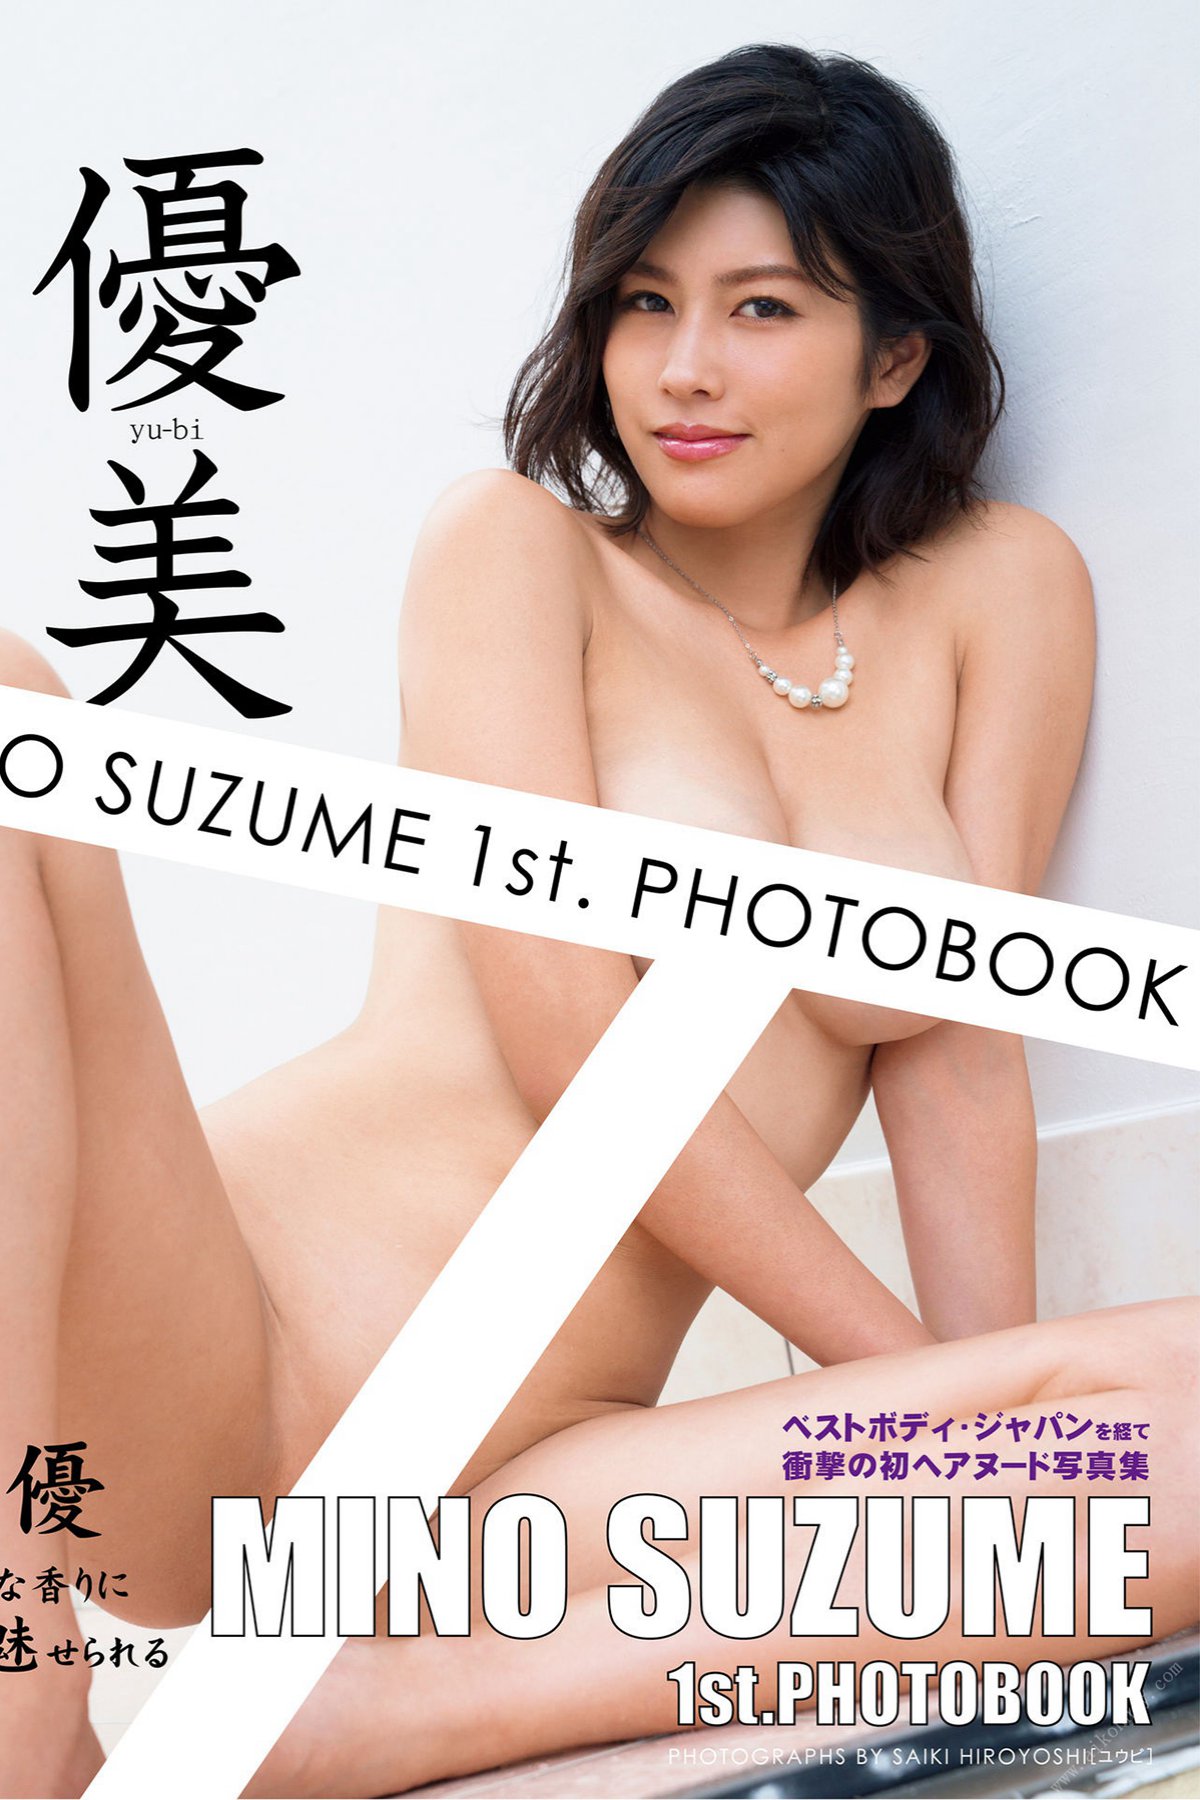 Photobook Suzume Mino 美乃すずめ 1st Photobook – Yu bi 優美 2021-08-25